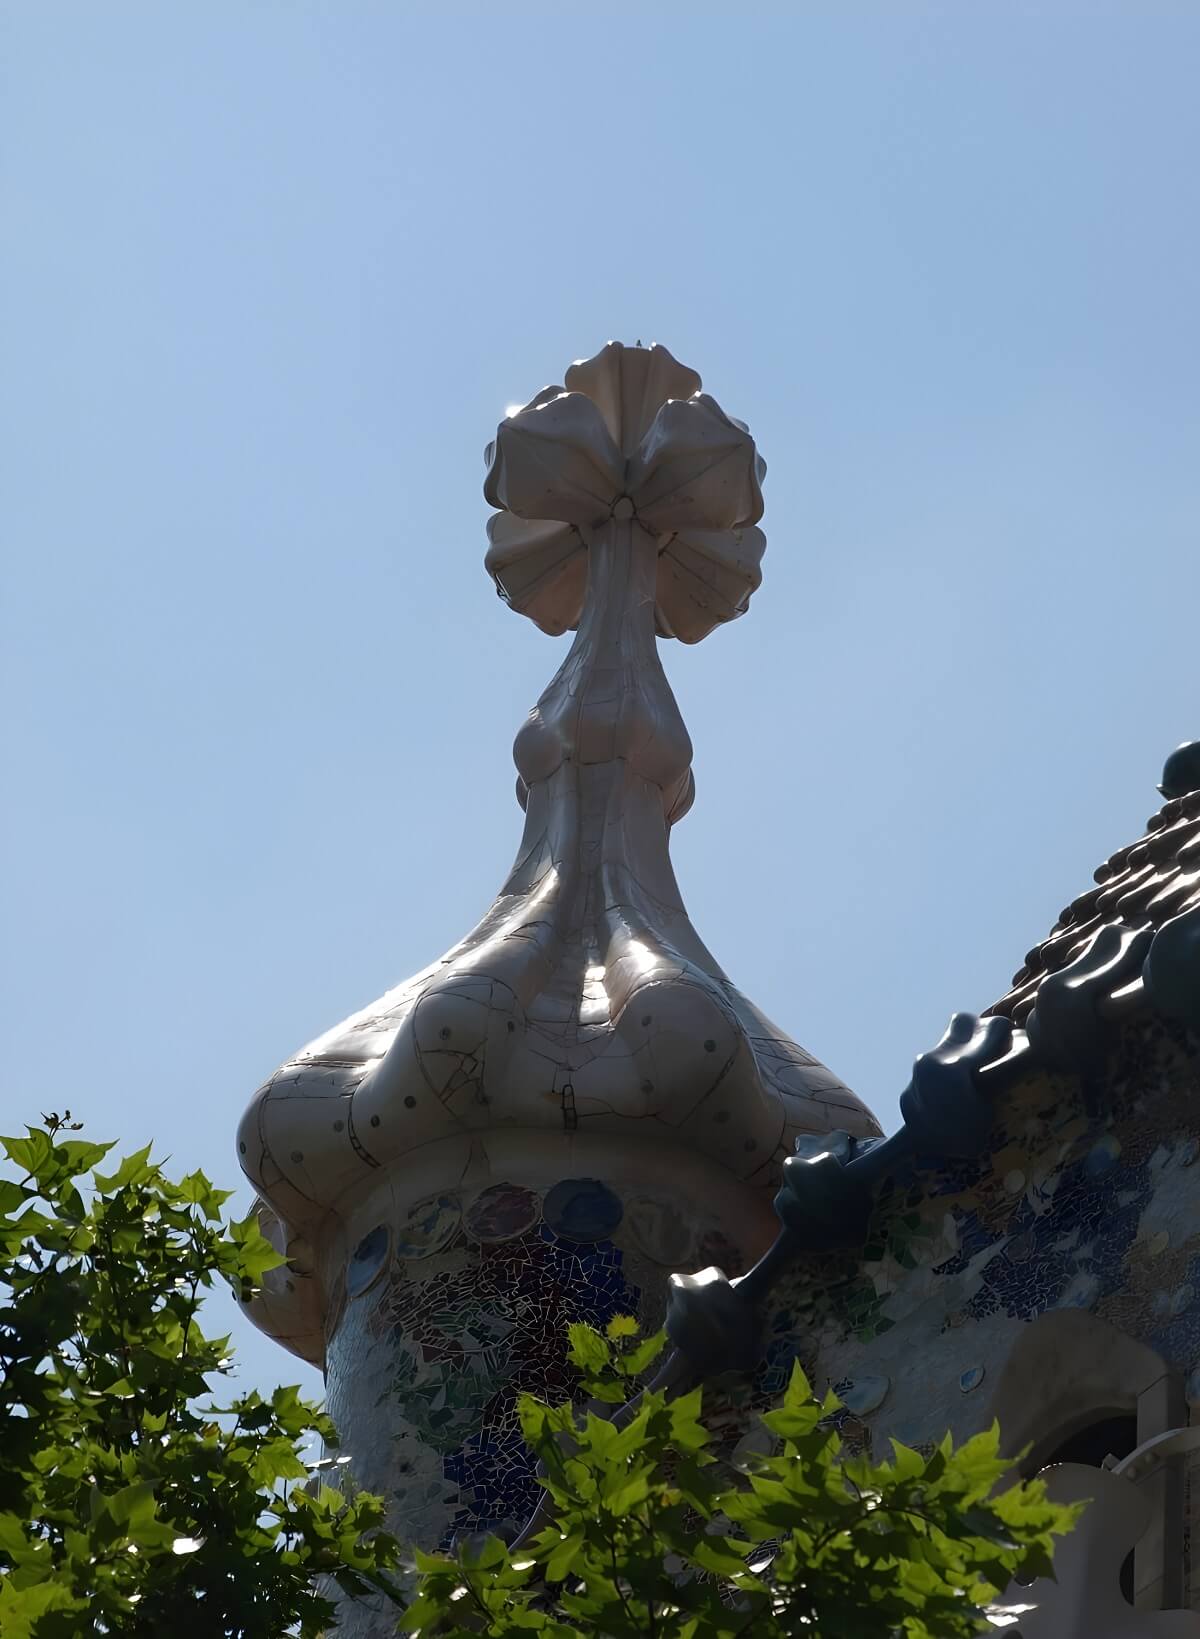 Elementy dachu Casa Batlló